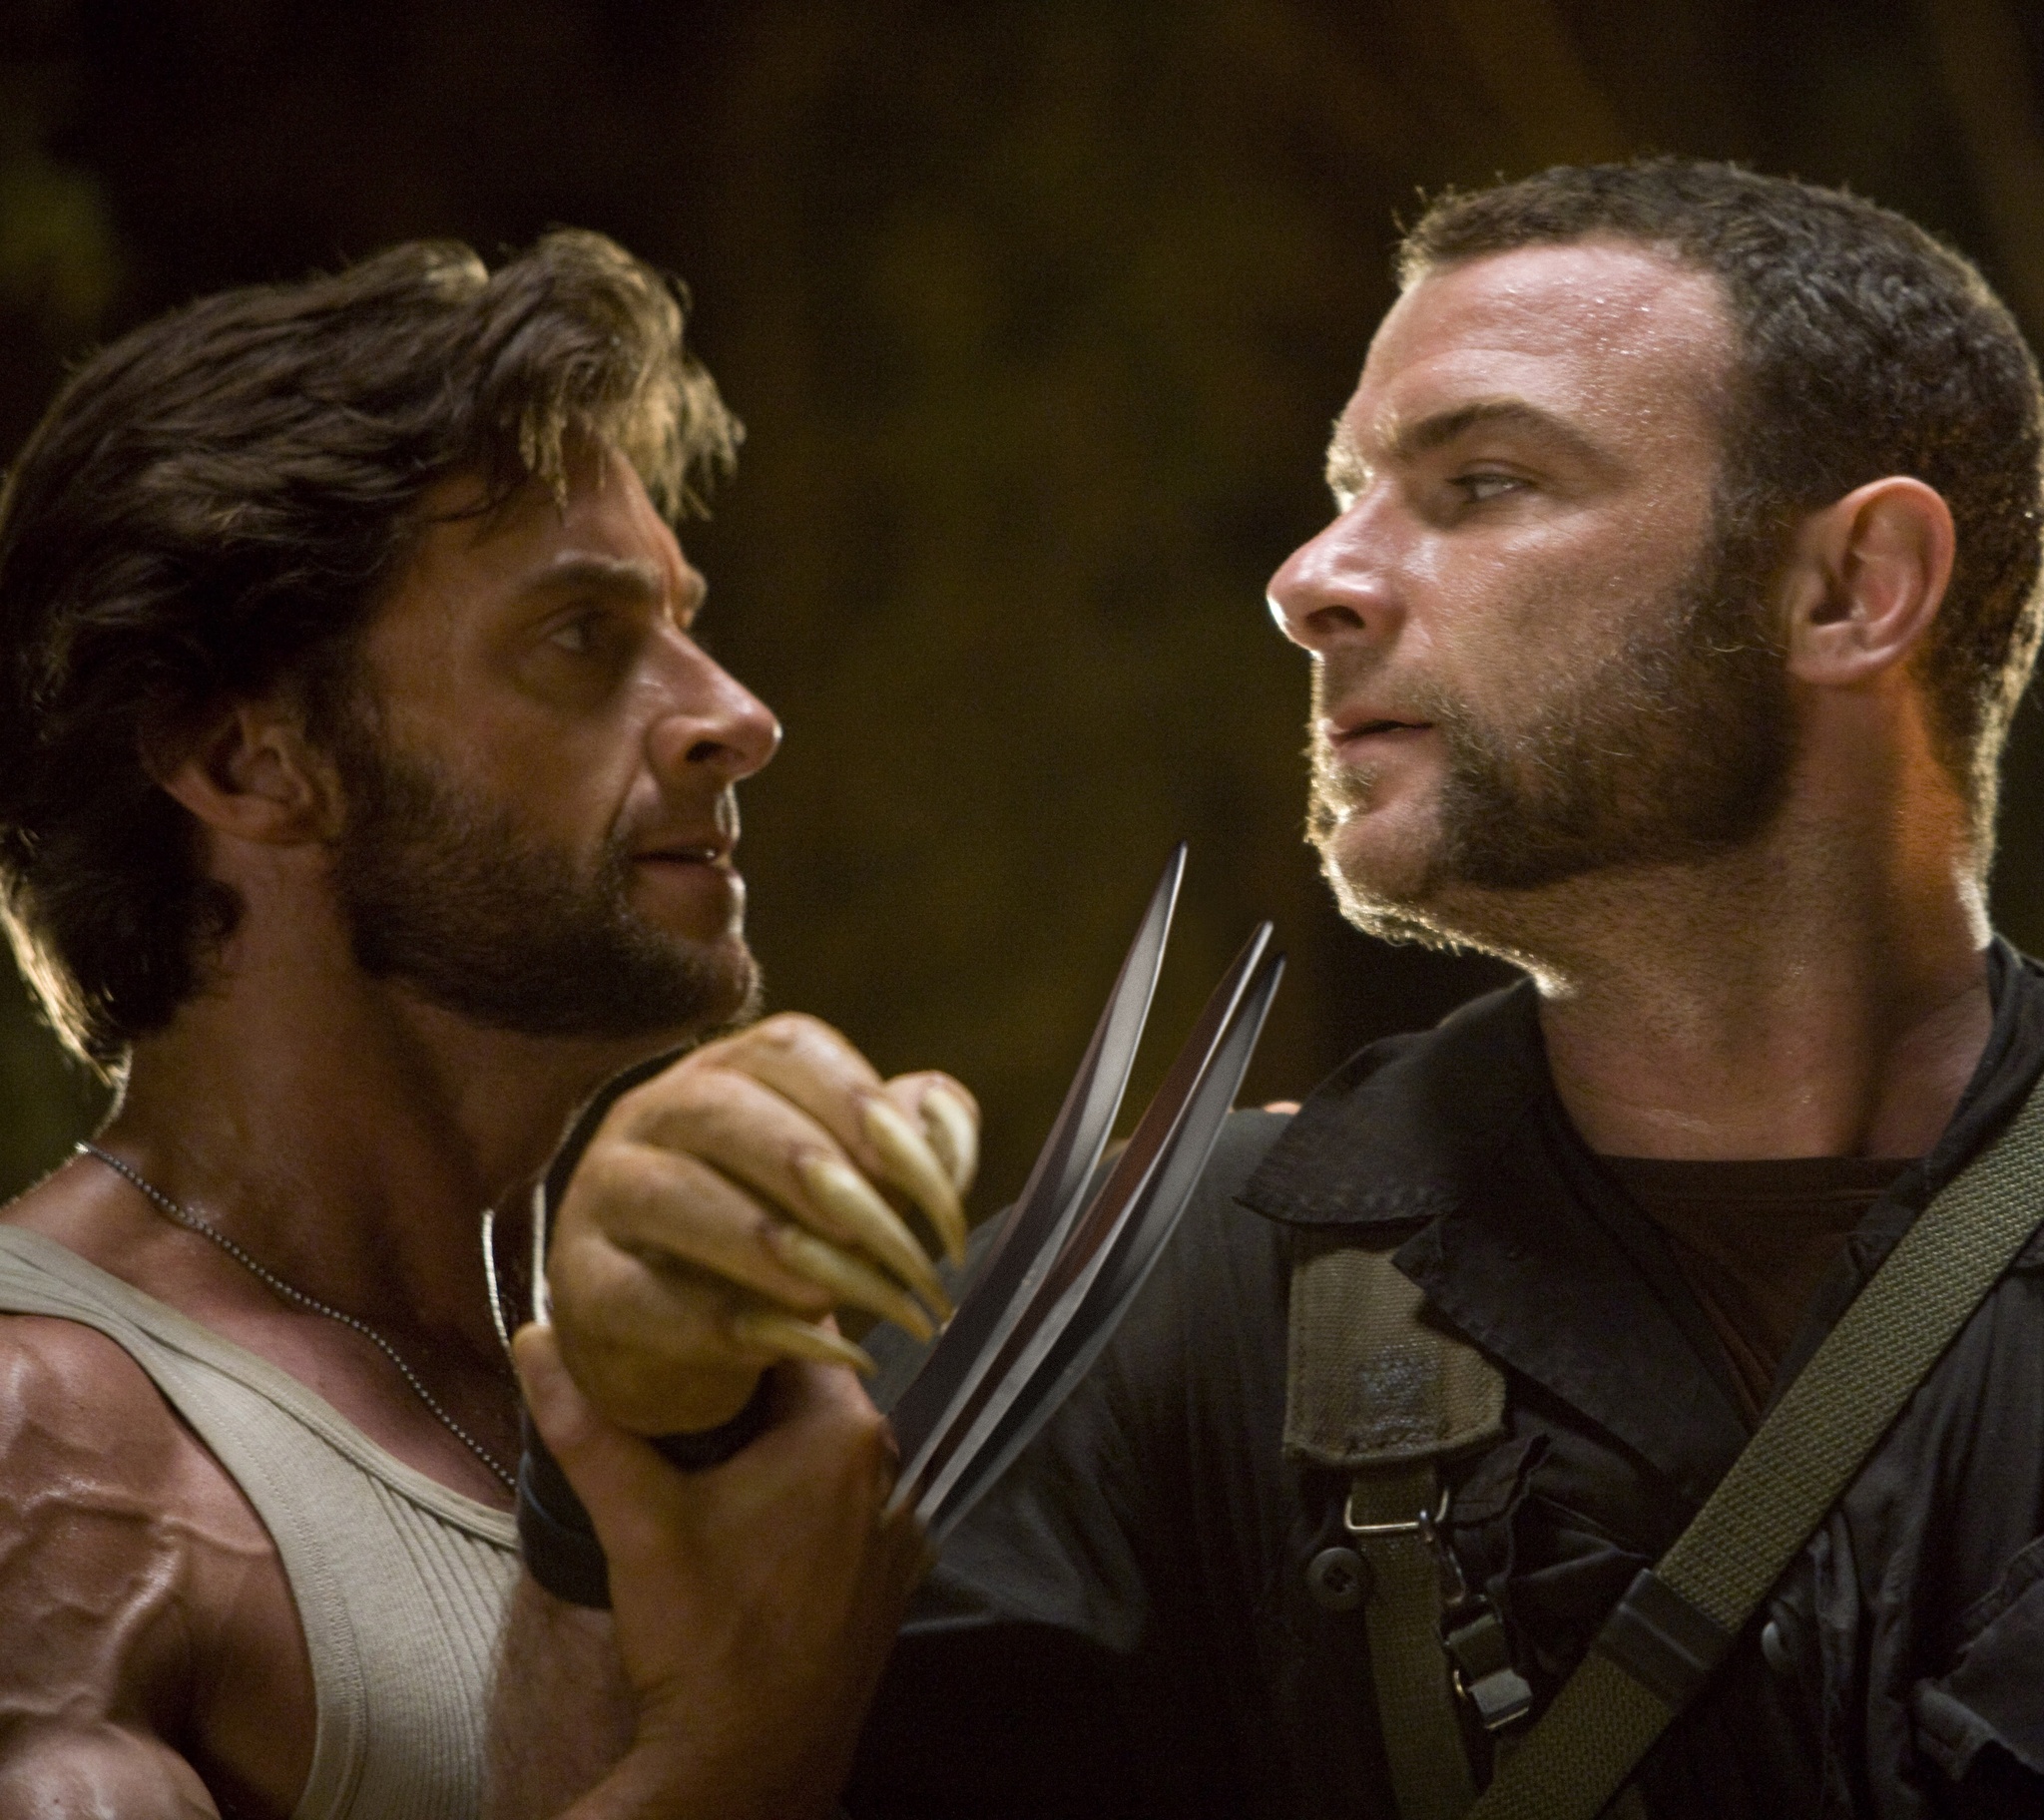 Liev Schreiber and Hugh Jackman in X-Men Origins: Wolverine (2009)